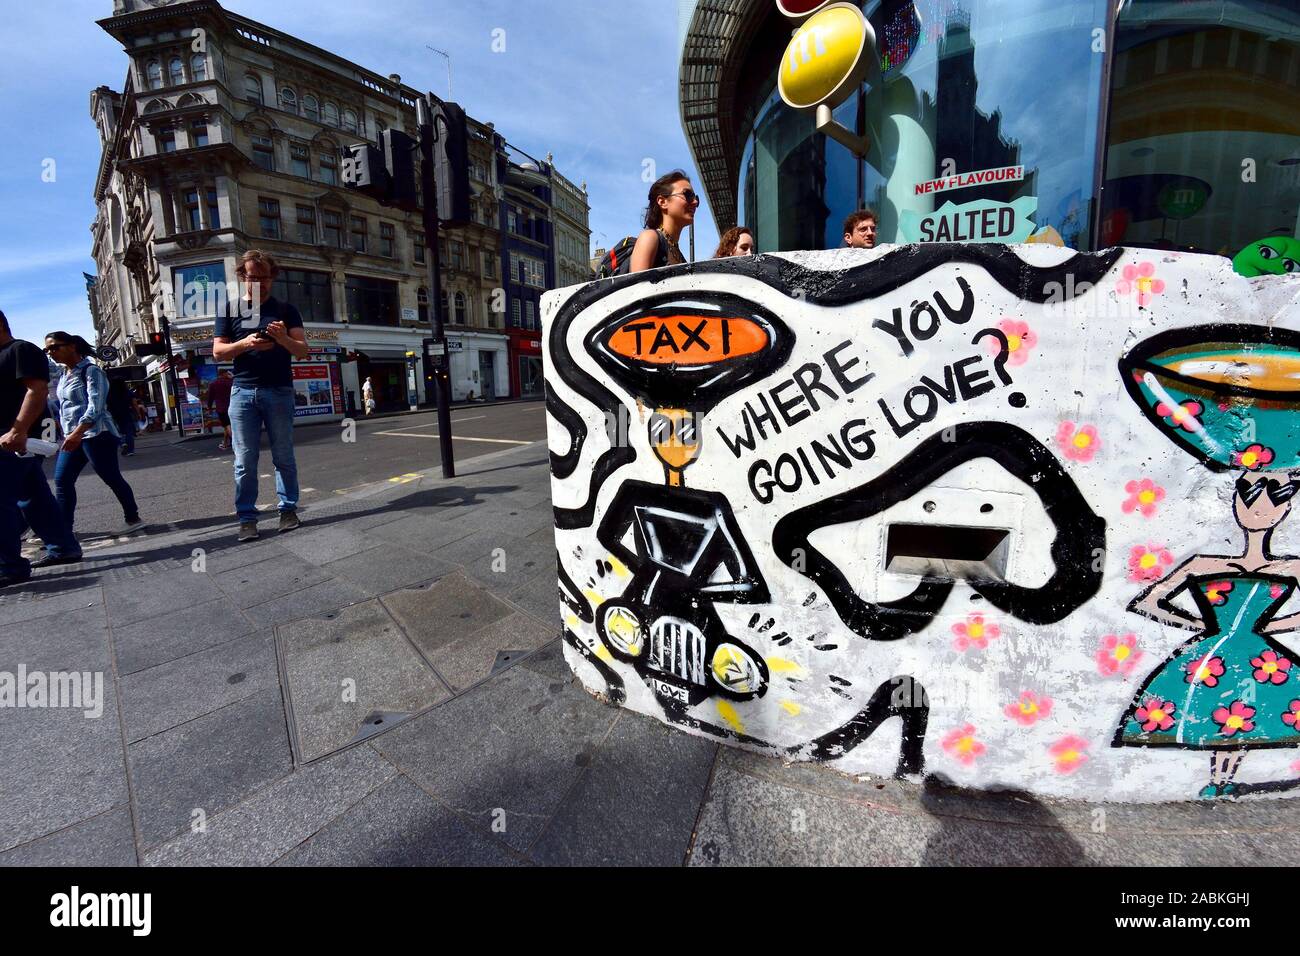 Londres, Angleterre, Royaume-Uni. Graffiti (par Charlotte Posner) sur les bornes de la circulation dans la région de Leicester Square - chauffeur de taxi 'Où allez-vous l'amour ?" Banque D'Images